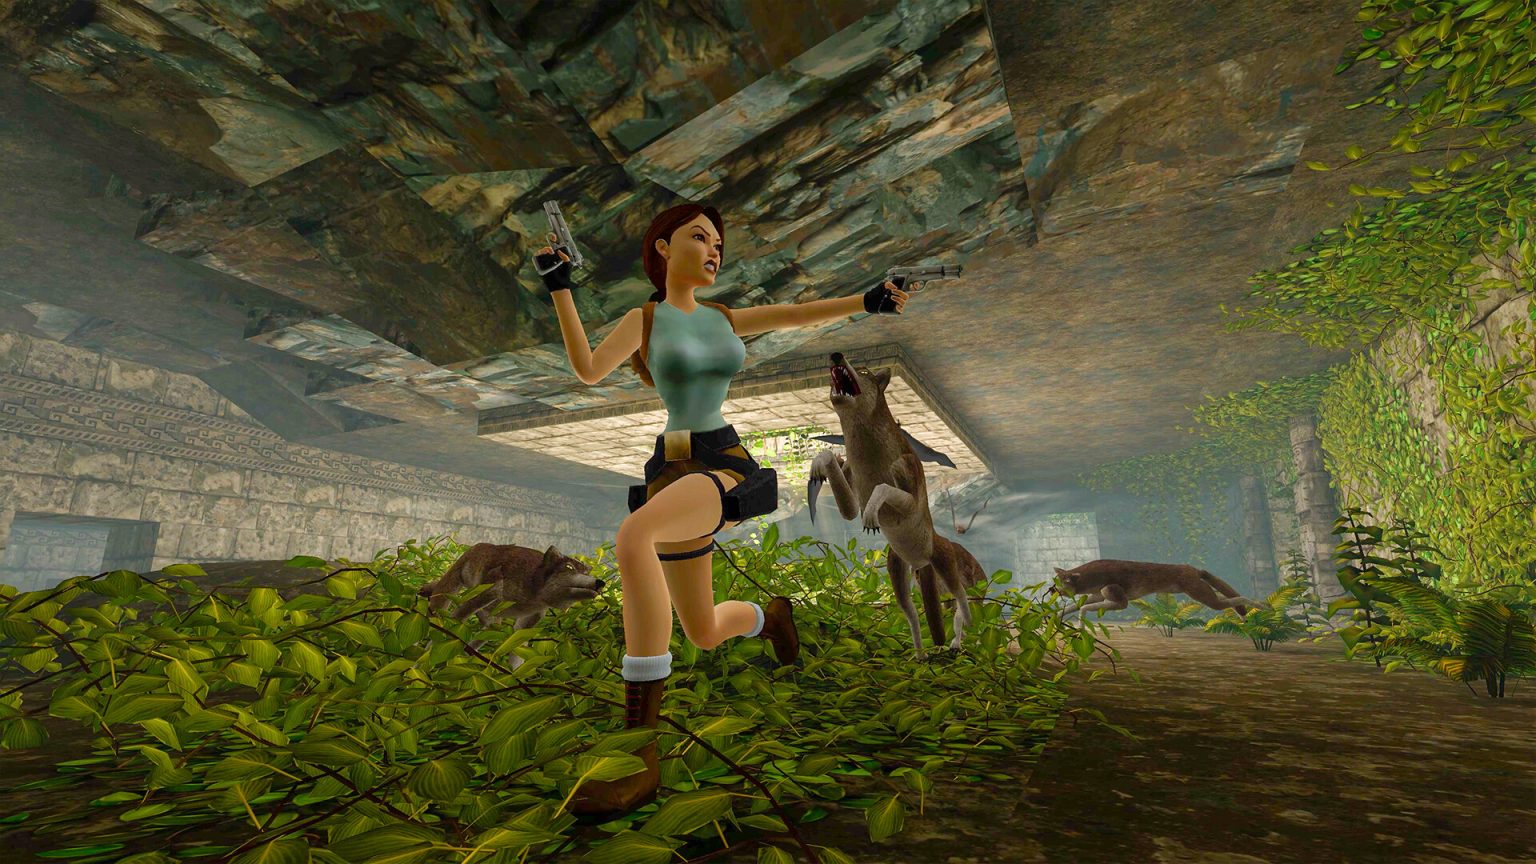 Le rimasterizzazioni di tre giochi di Tomb Raider avranno edizioni fisiche grazie a Limited Run Games